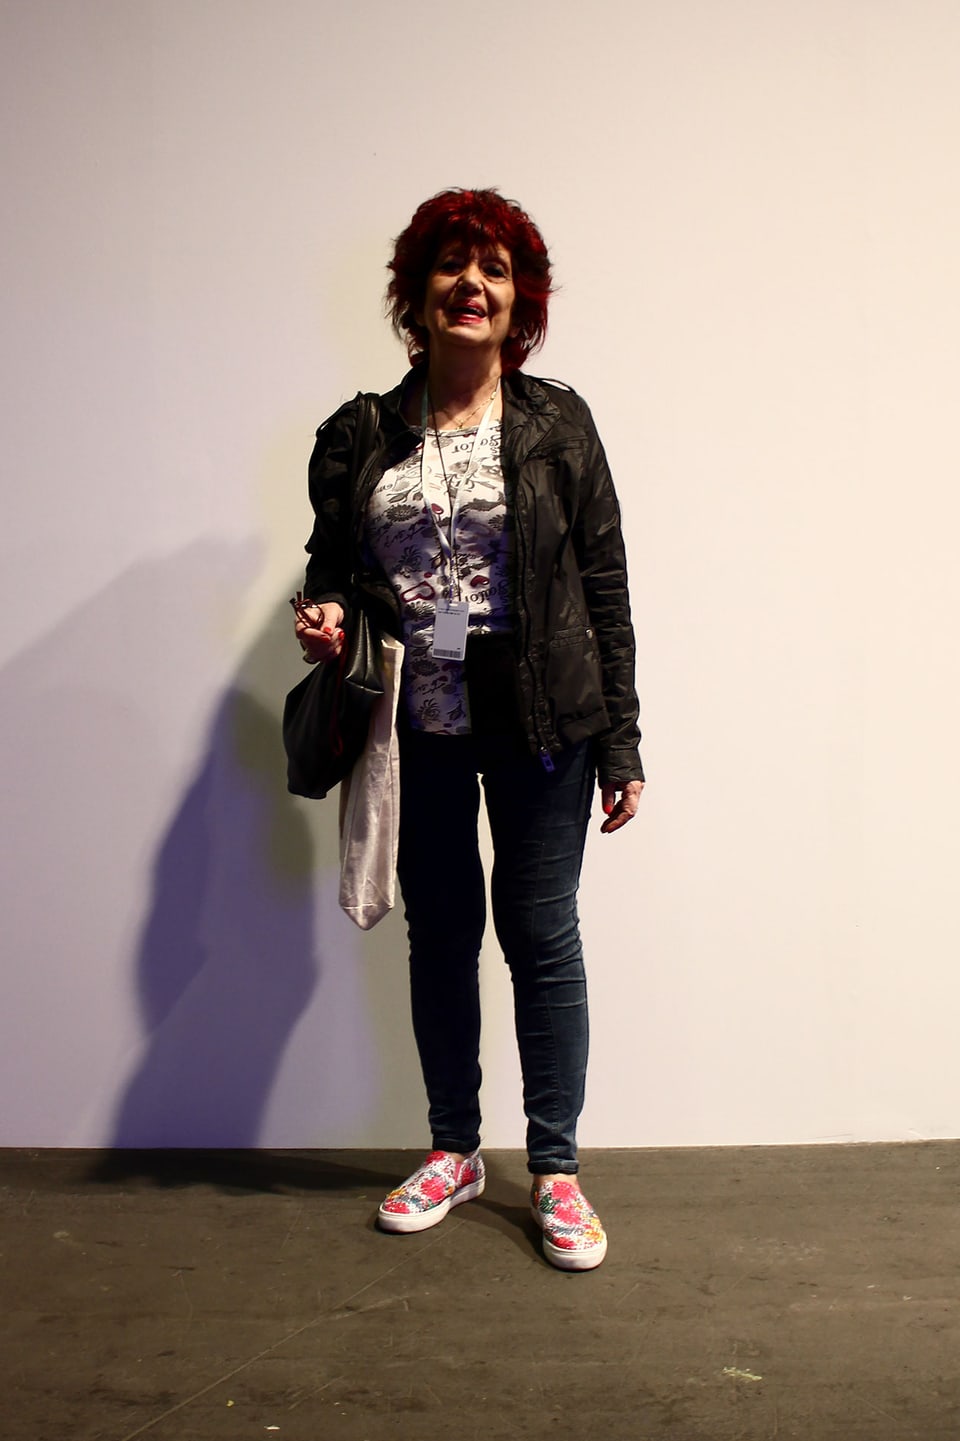 Lucia Spadano, Gründerin & Direktorin des italienischen Magazins Segno für zeitgenössische Kuns